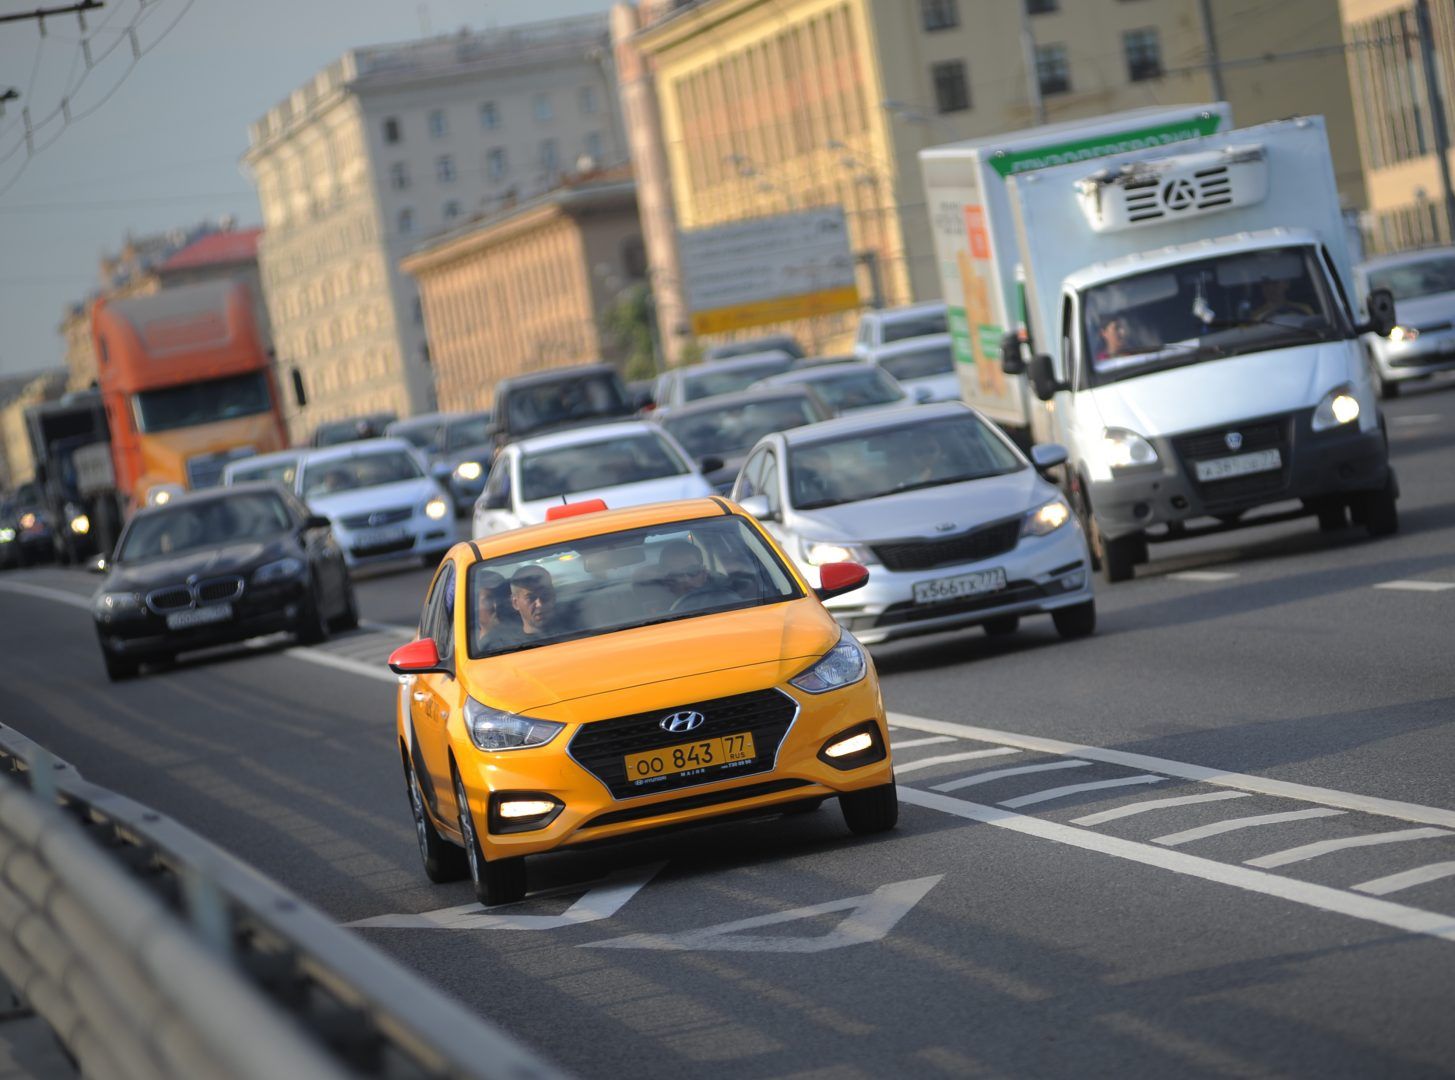 ЦОДД планирует провести работы по ликвидации опасных участков на дорогах Москвы. Фото: Александр Кожохин